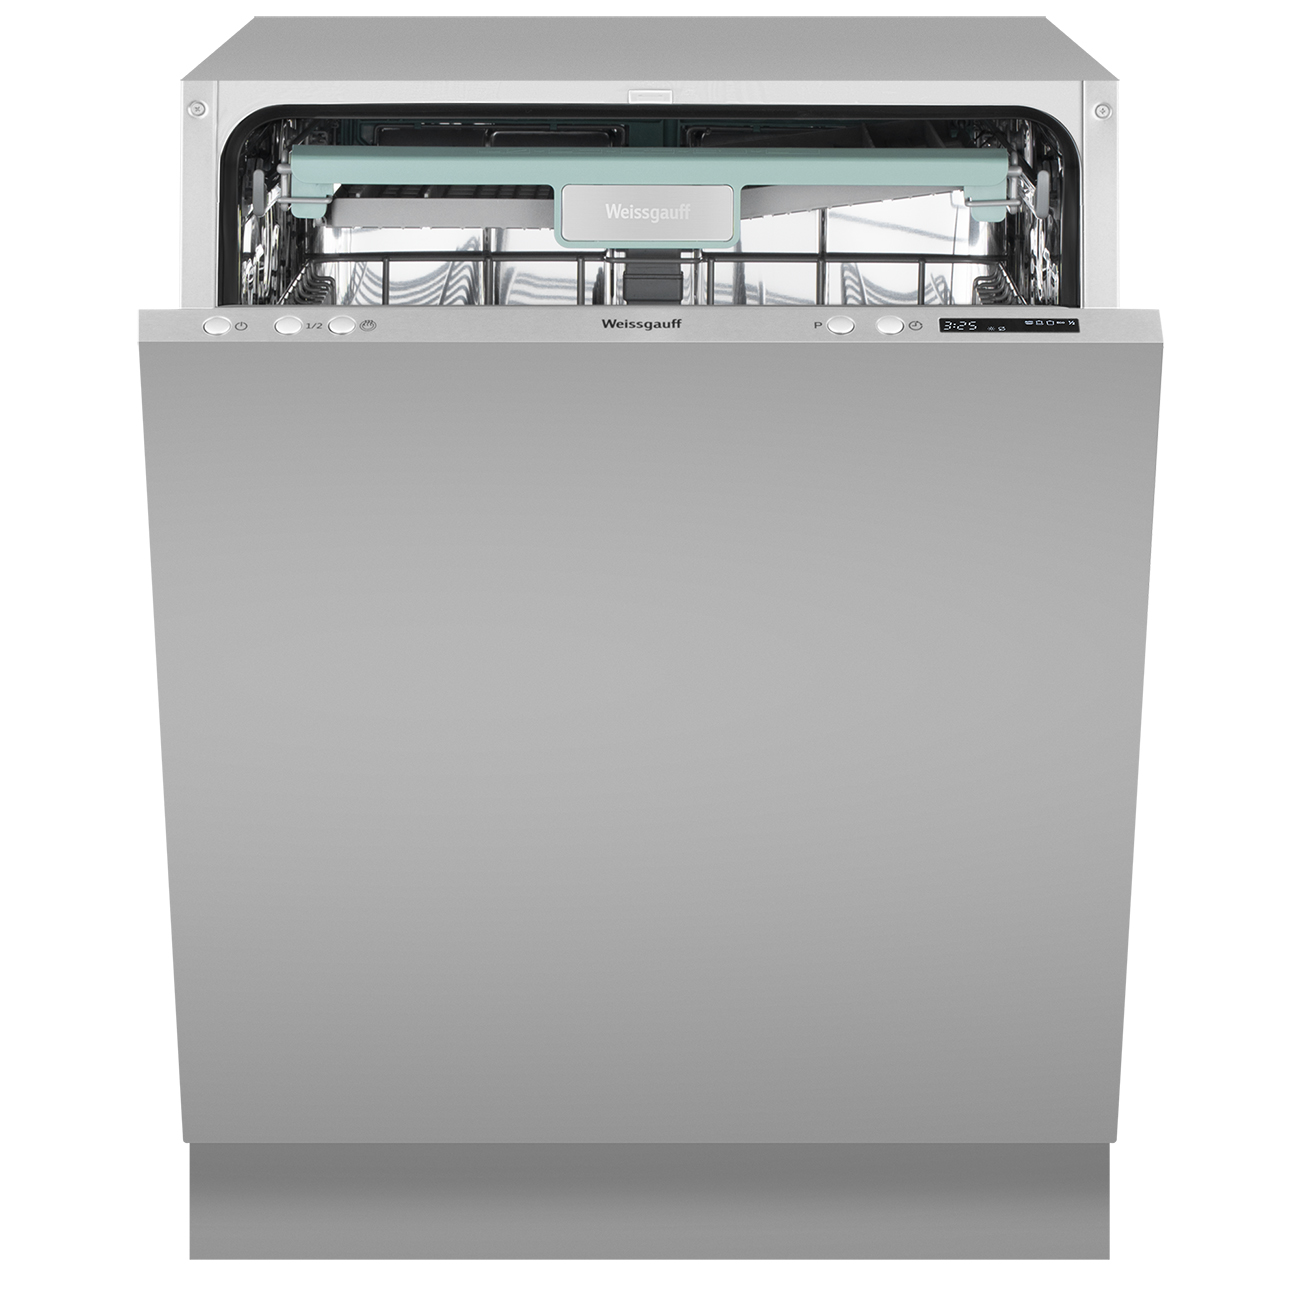 Встраиваемая посудомоечная машина Weissgauff BDW 6043 D посудомоечная машина weissgauff dw 6026 d silver серебристый